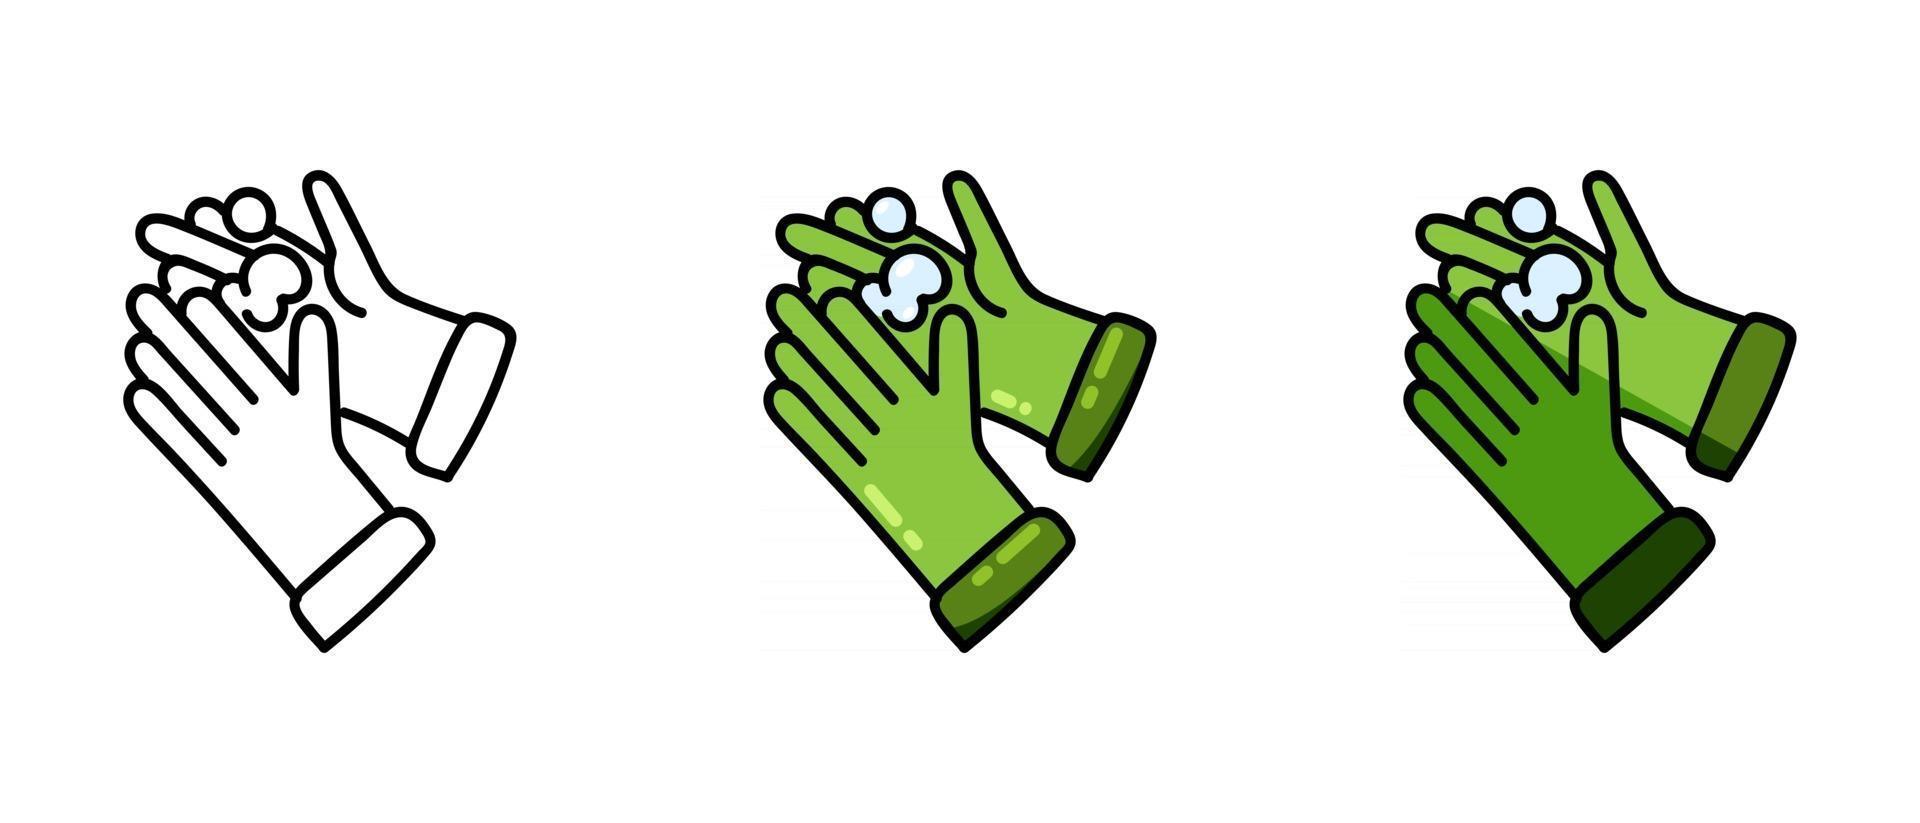 Kontur- und grüne Handschuhsymbole aus Schaumstoff vektor